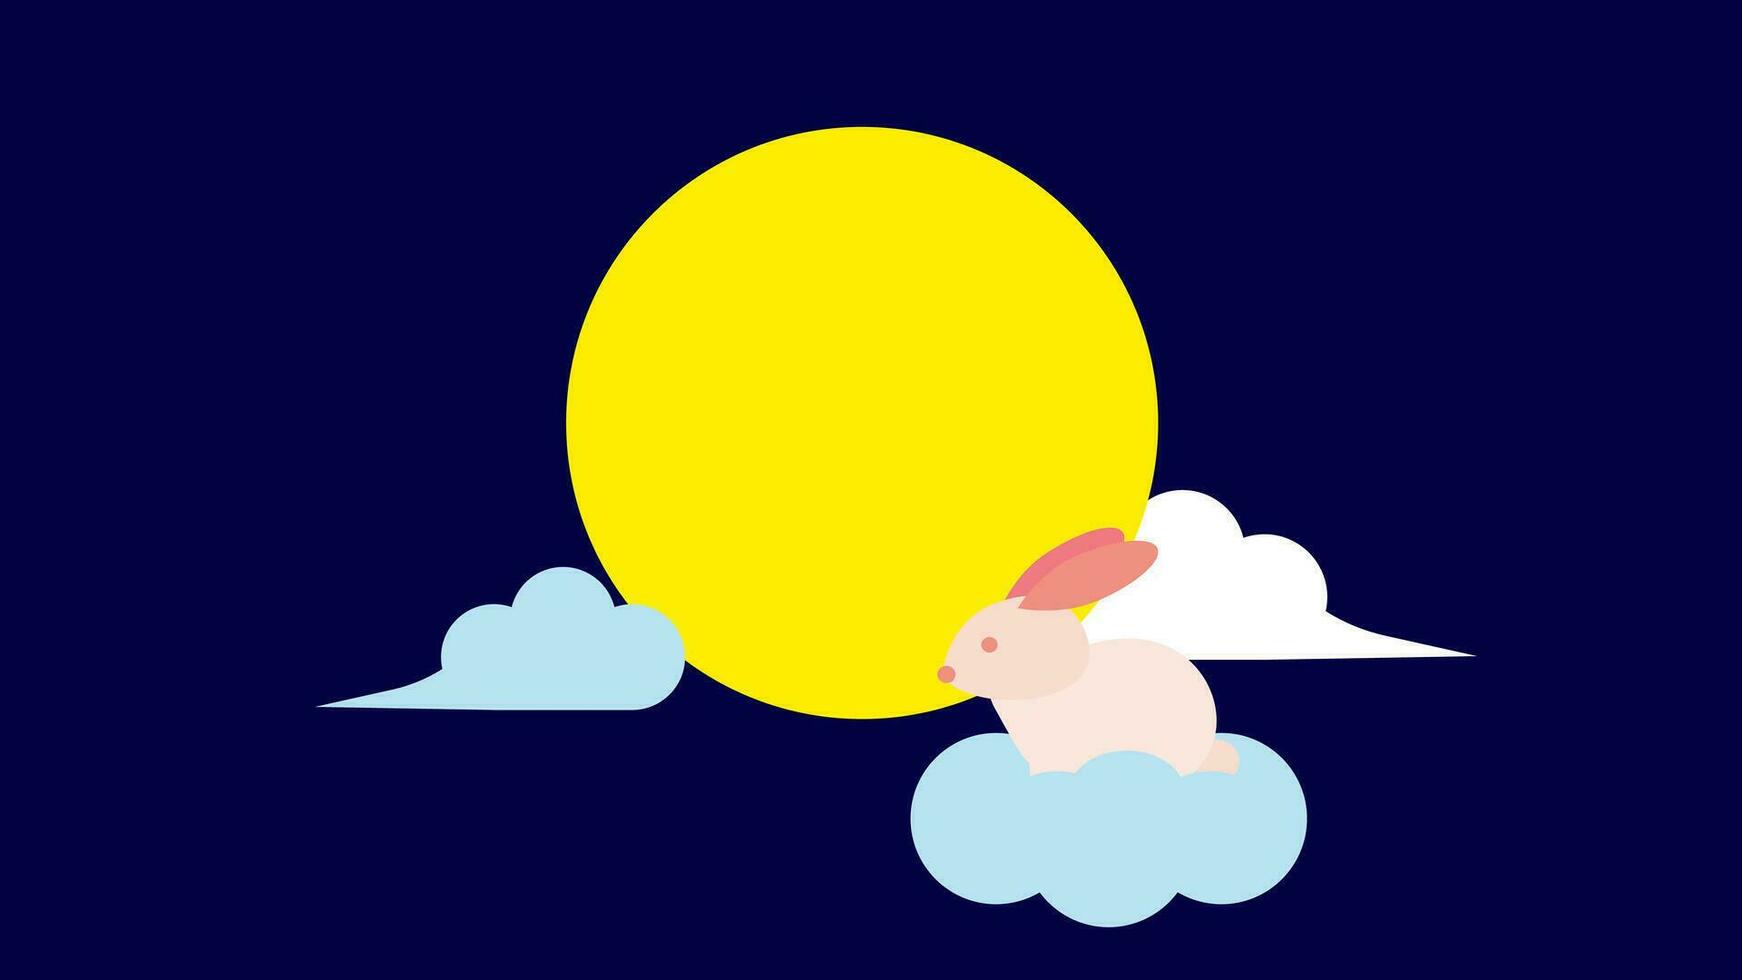 dibujos animados linda Luna Conejo conejito volador a el Luna encima nubes asiático mediados de otoño festival cuento de hadas historia personaje. plano diseño fondo de pantalla, vector, ilustración, eps10 vector